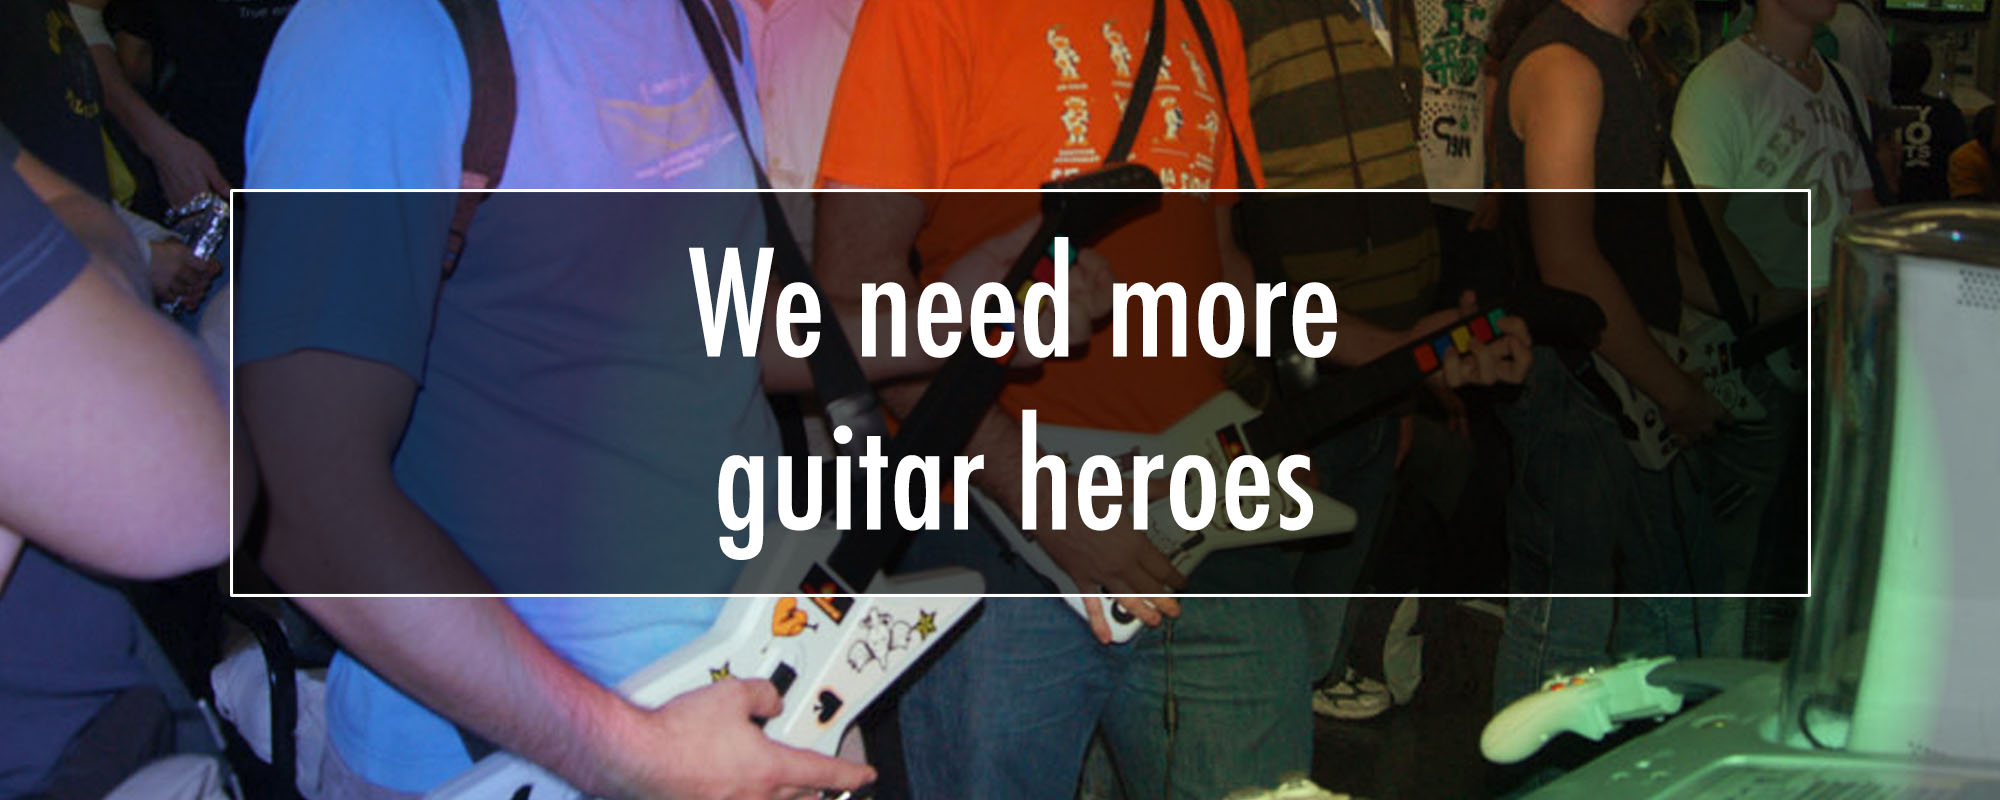 We need more guitar heroes!